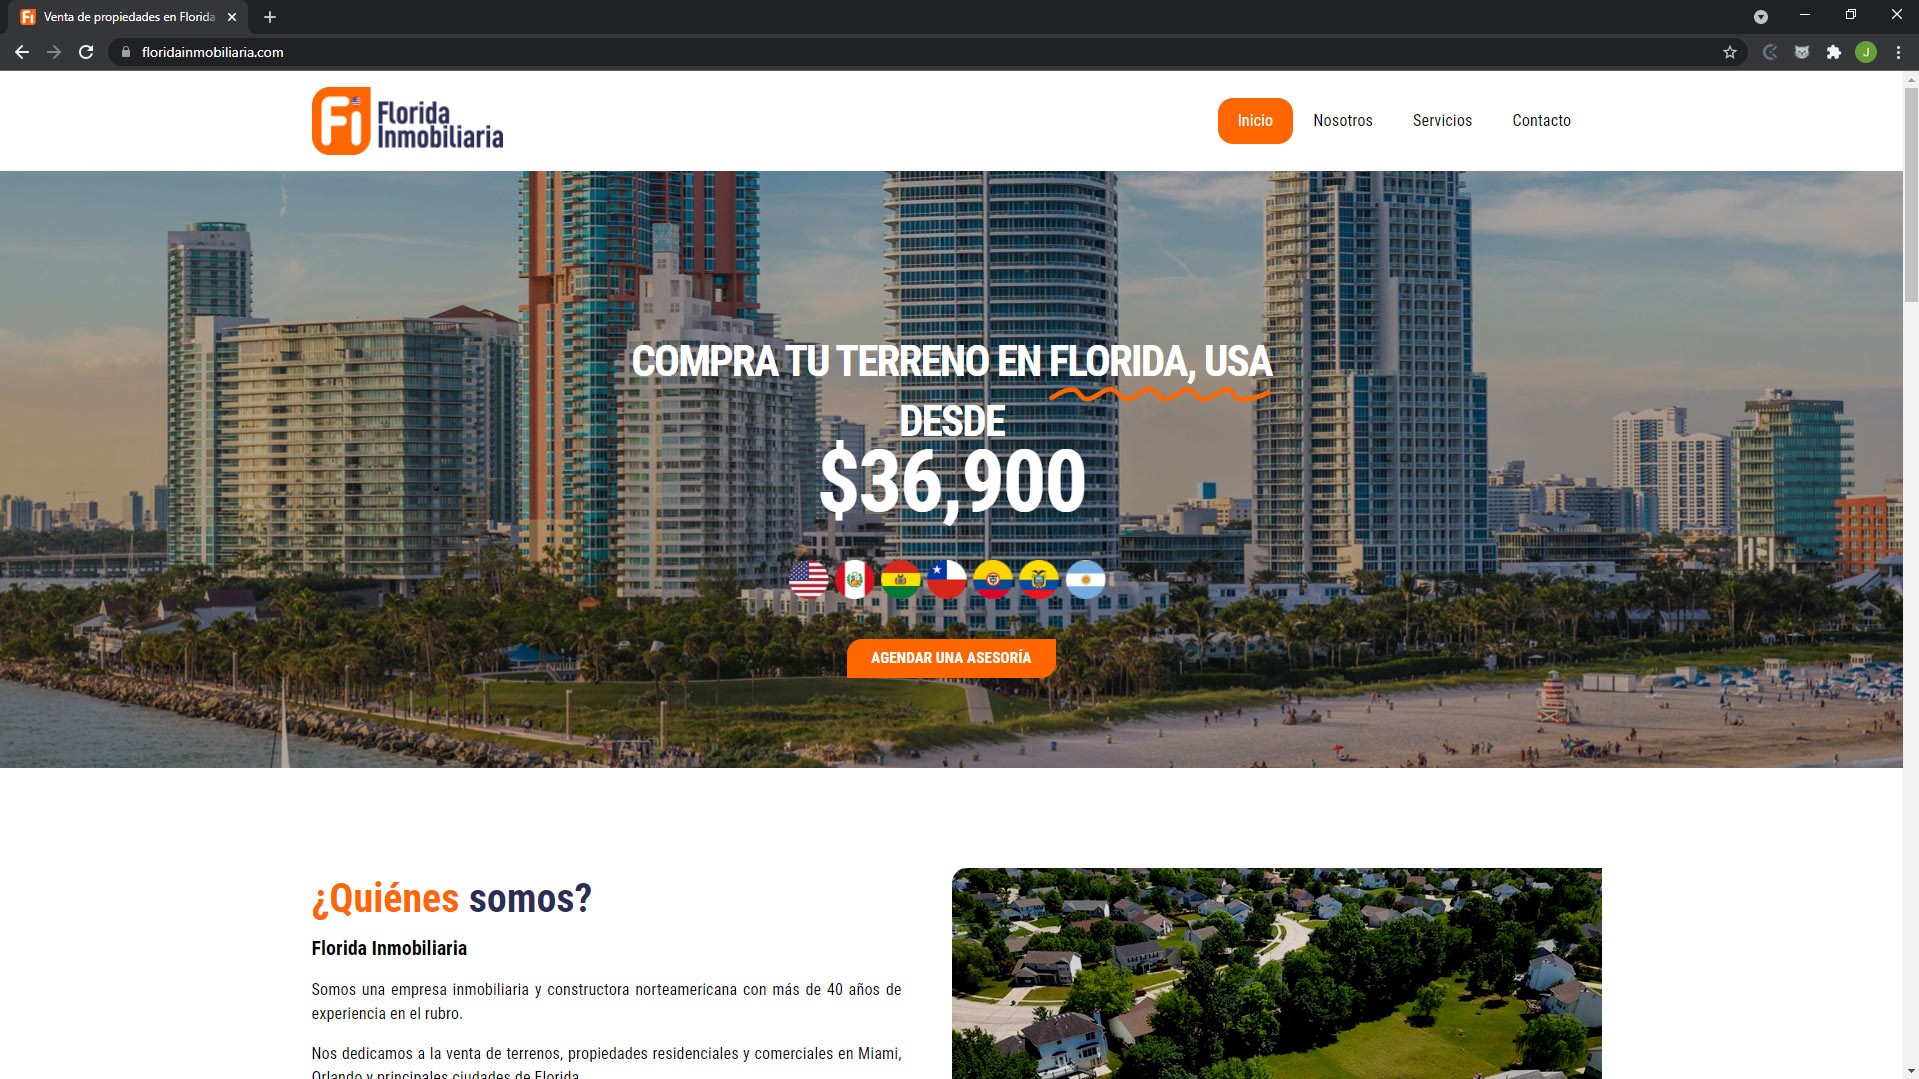 Florida Inmobiliaria